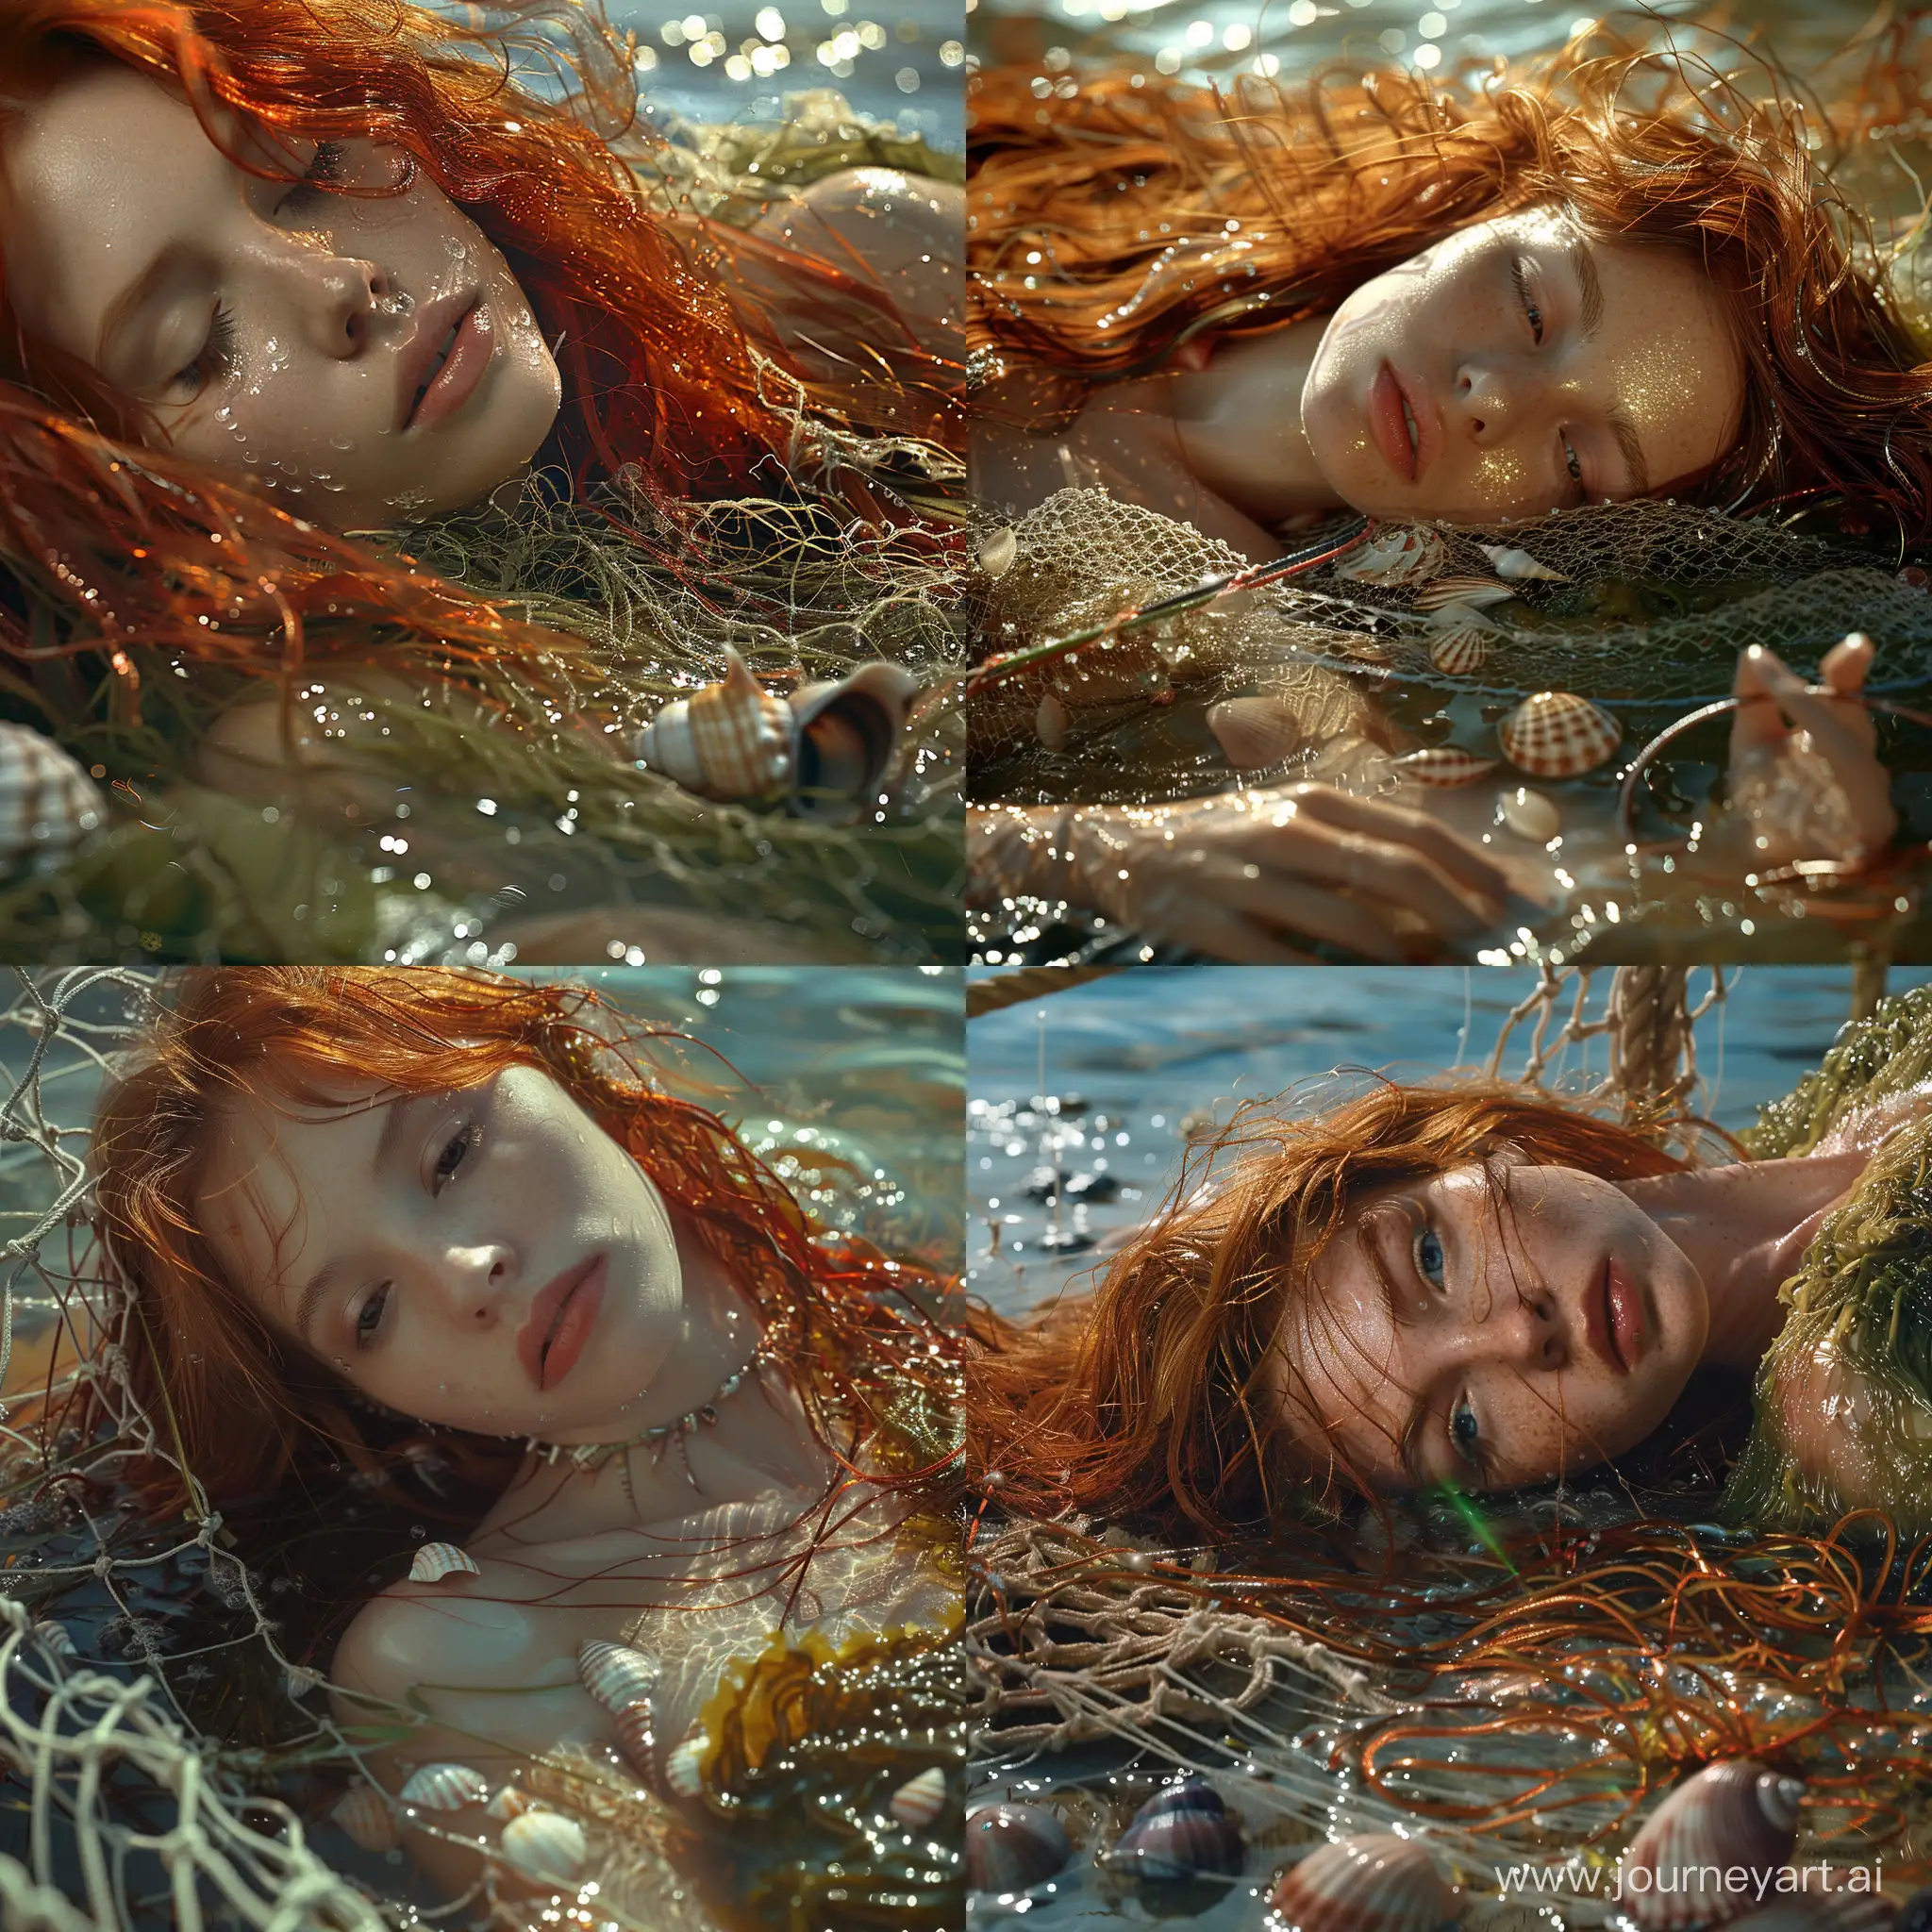 RedHaired-Mermaid-Girl-in-Seaweed-Dress-on-Ocean-Floor